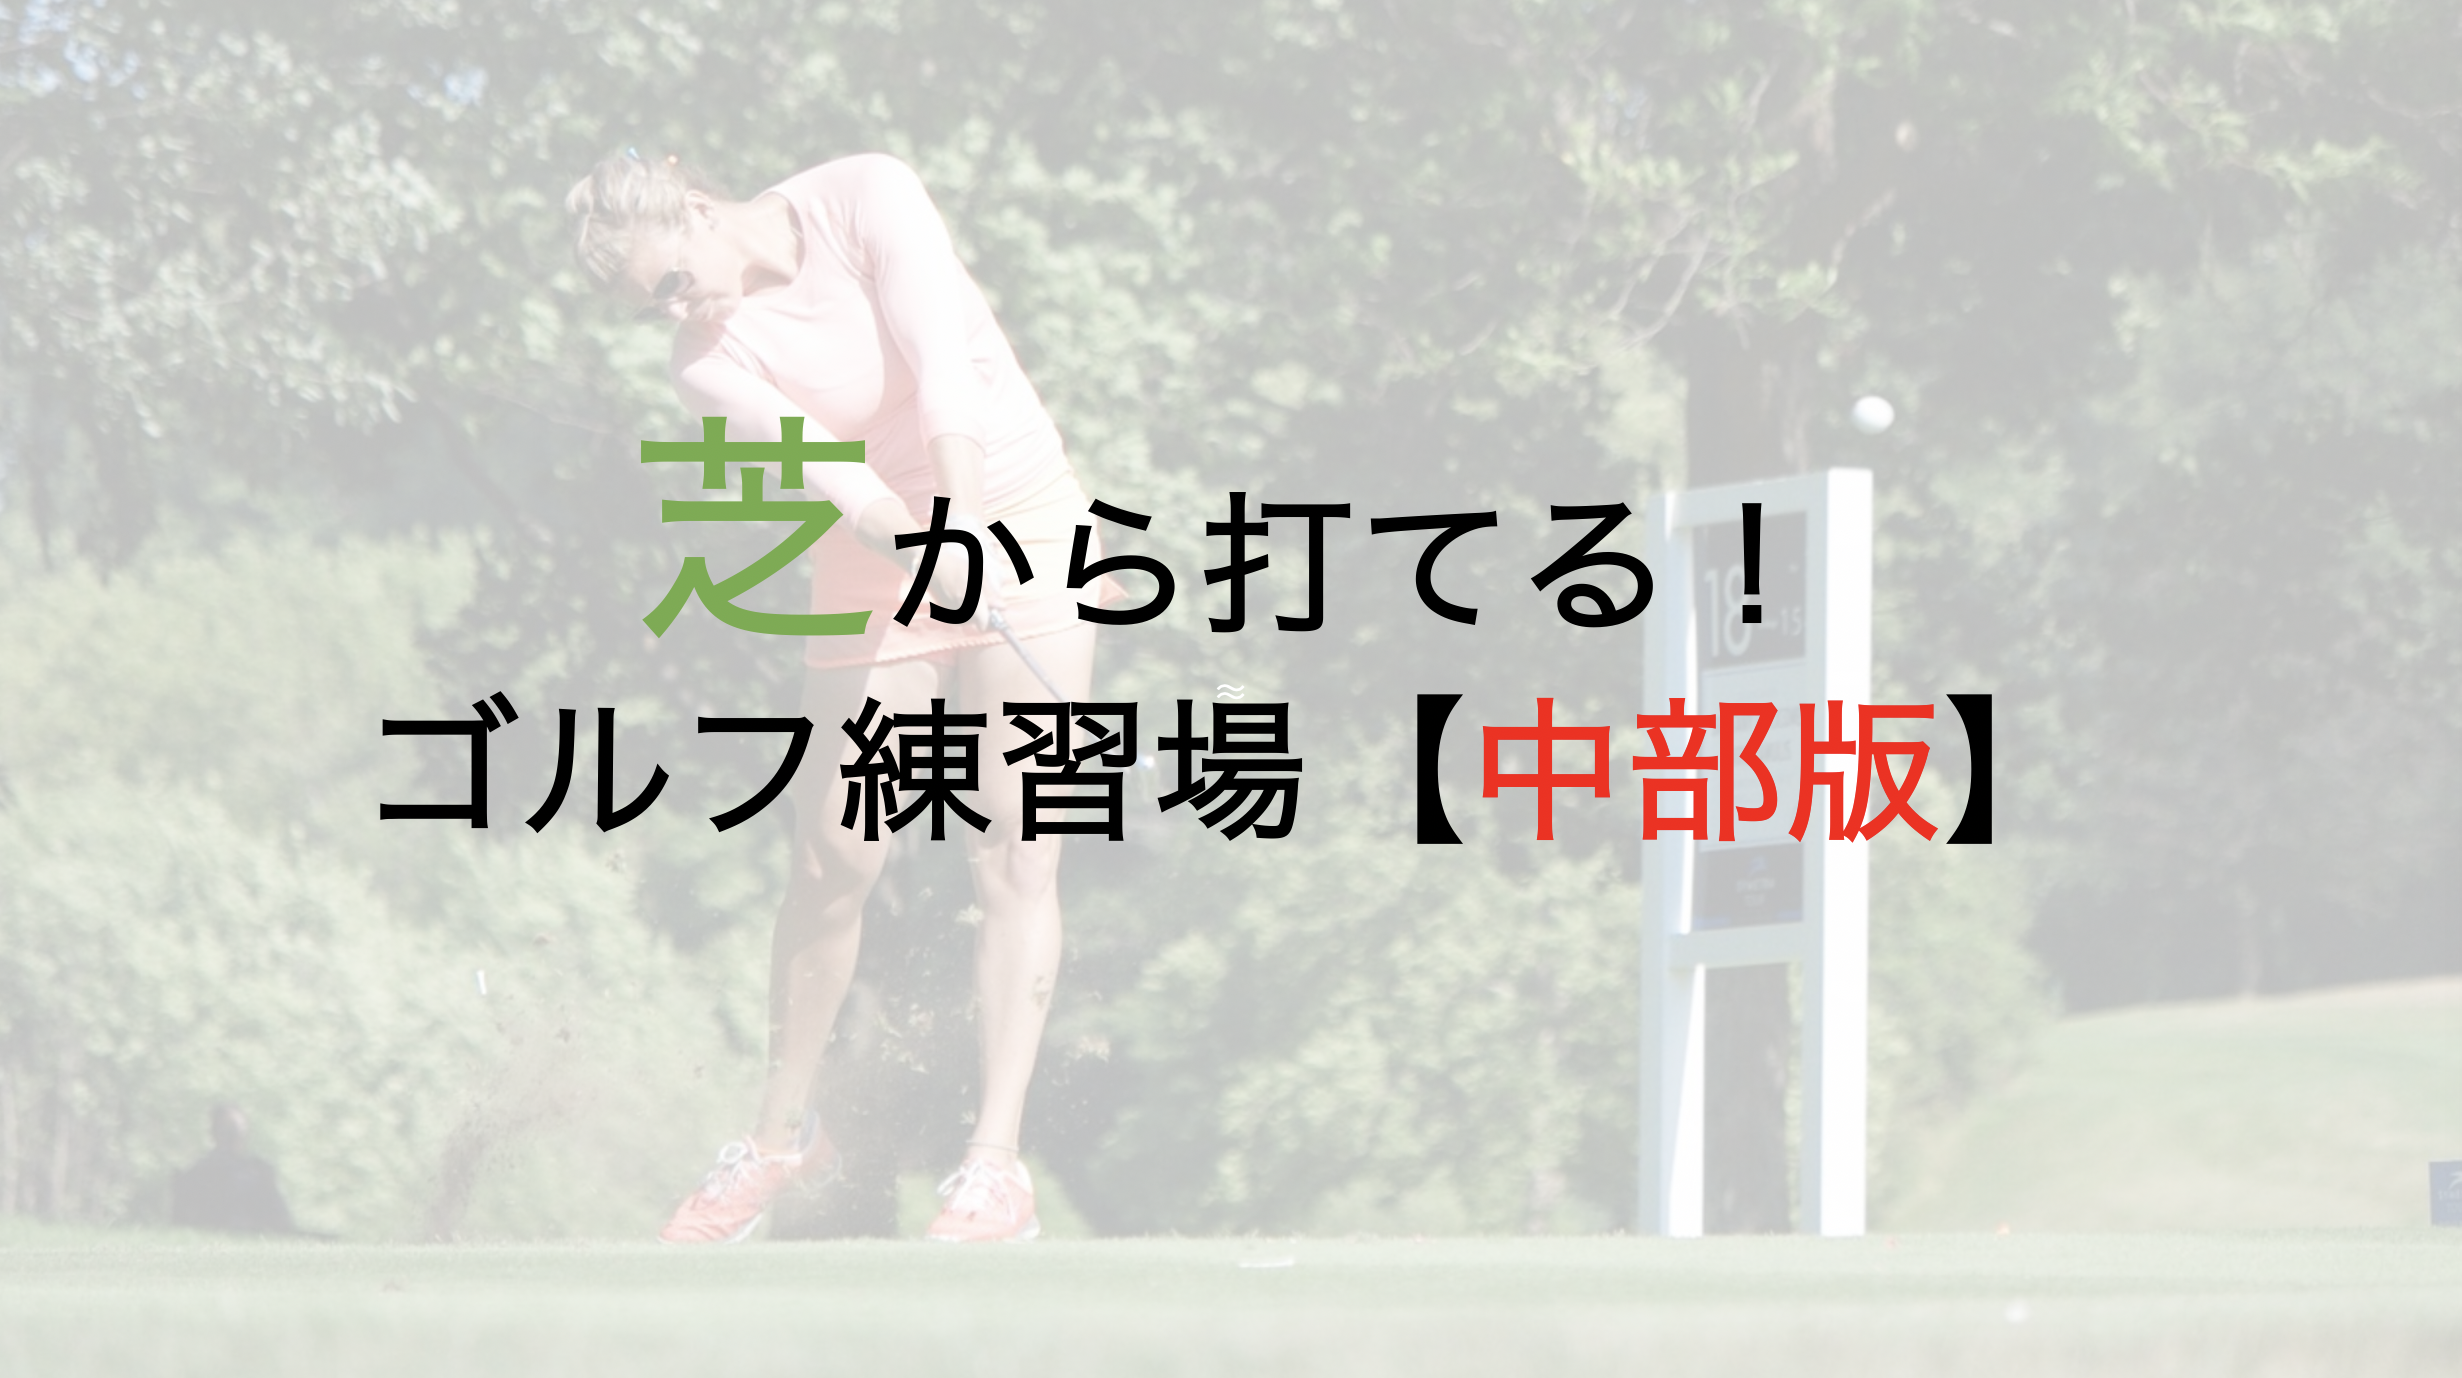 マットではなく芝から打てるゴルフ練習場【中部版】